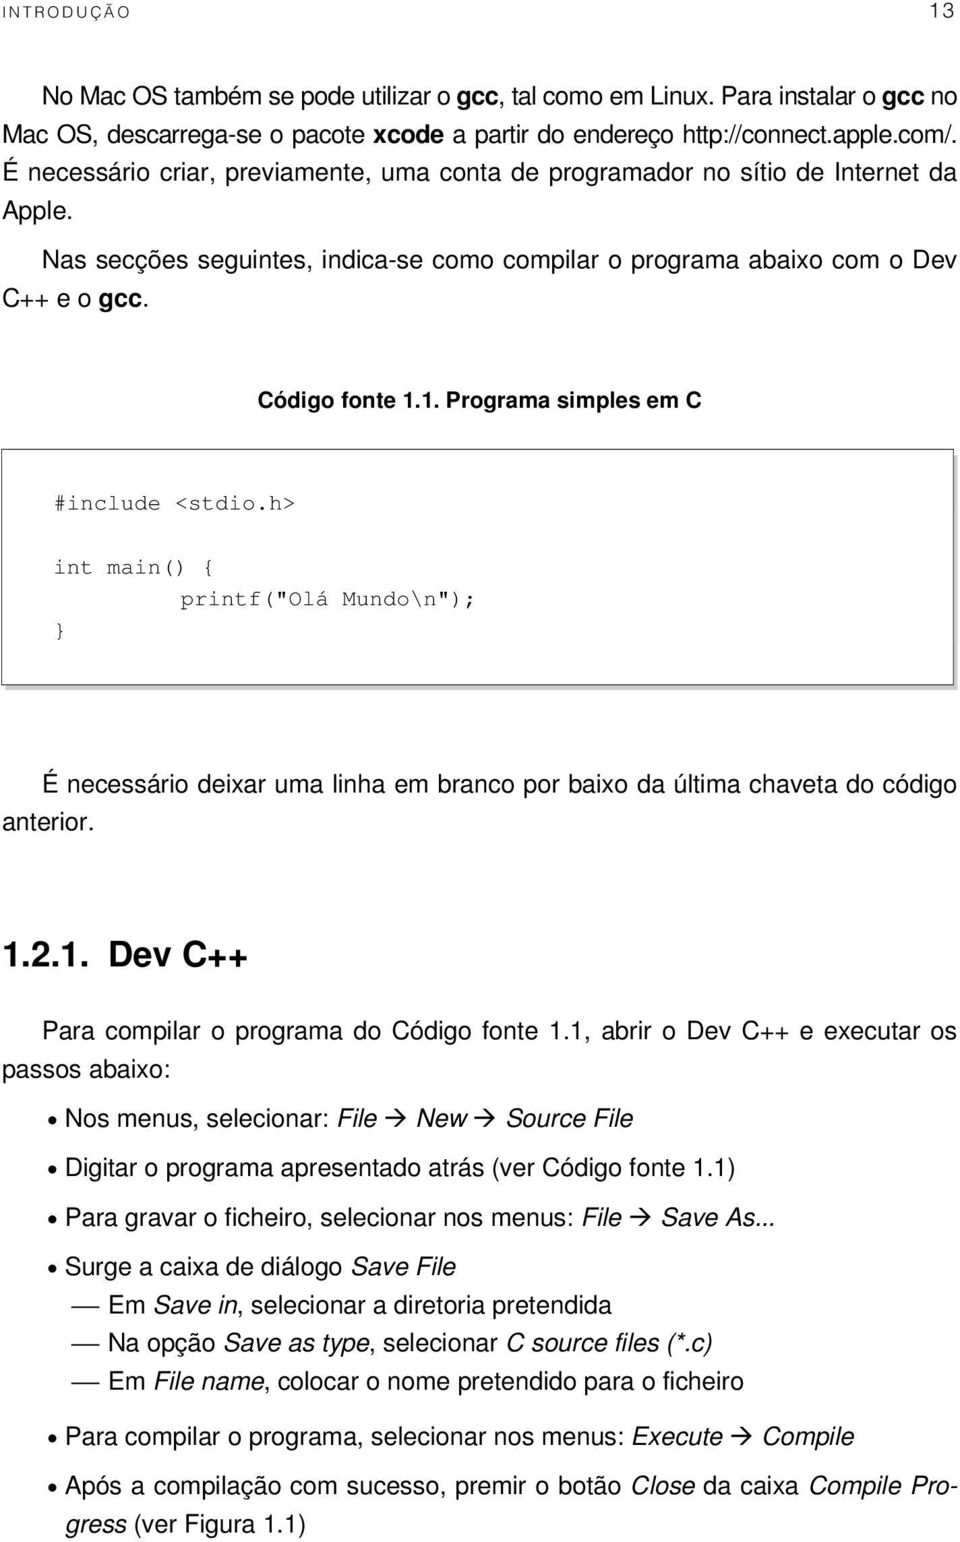 1. Programa simples em C #include <stdio.h> int main() { printf("olá Mundo\n"); } É necessário deixar uma linha em branco por baixo da última chaveta do código anterior. 1.2.1. Dev C++ Para compilar o programa do Código fonte 1.